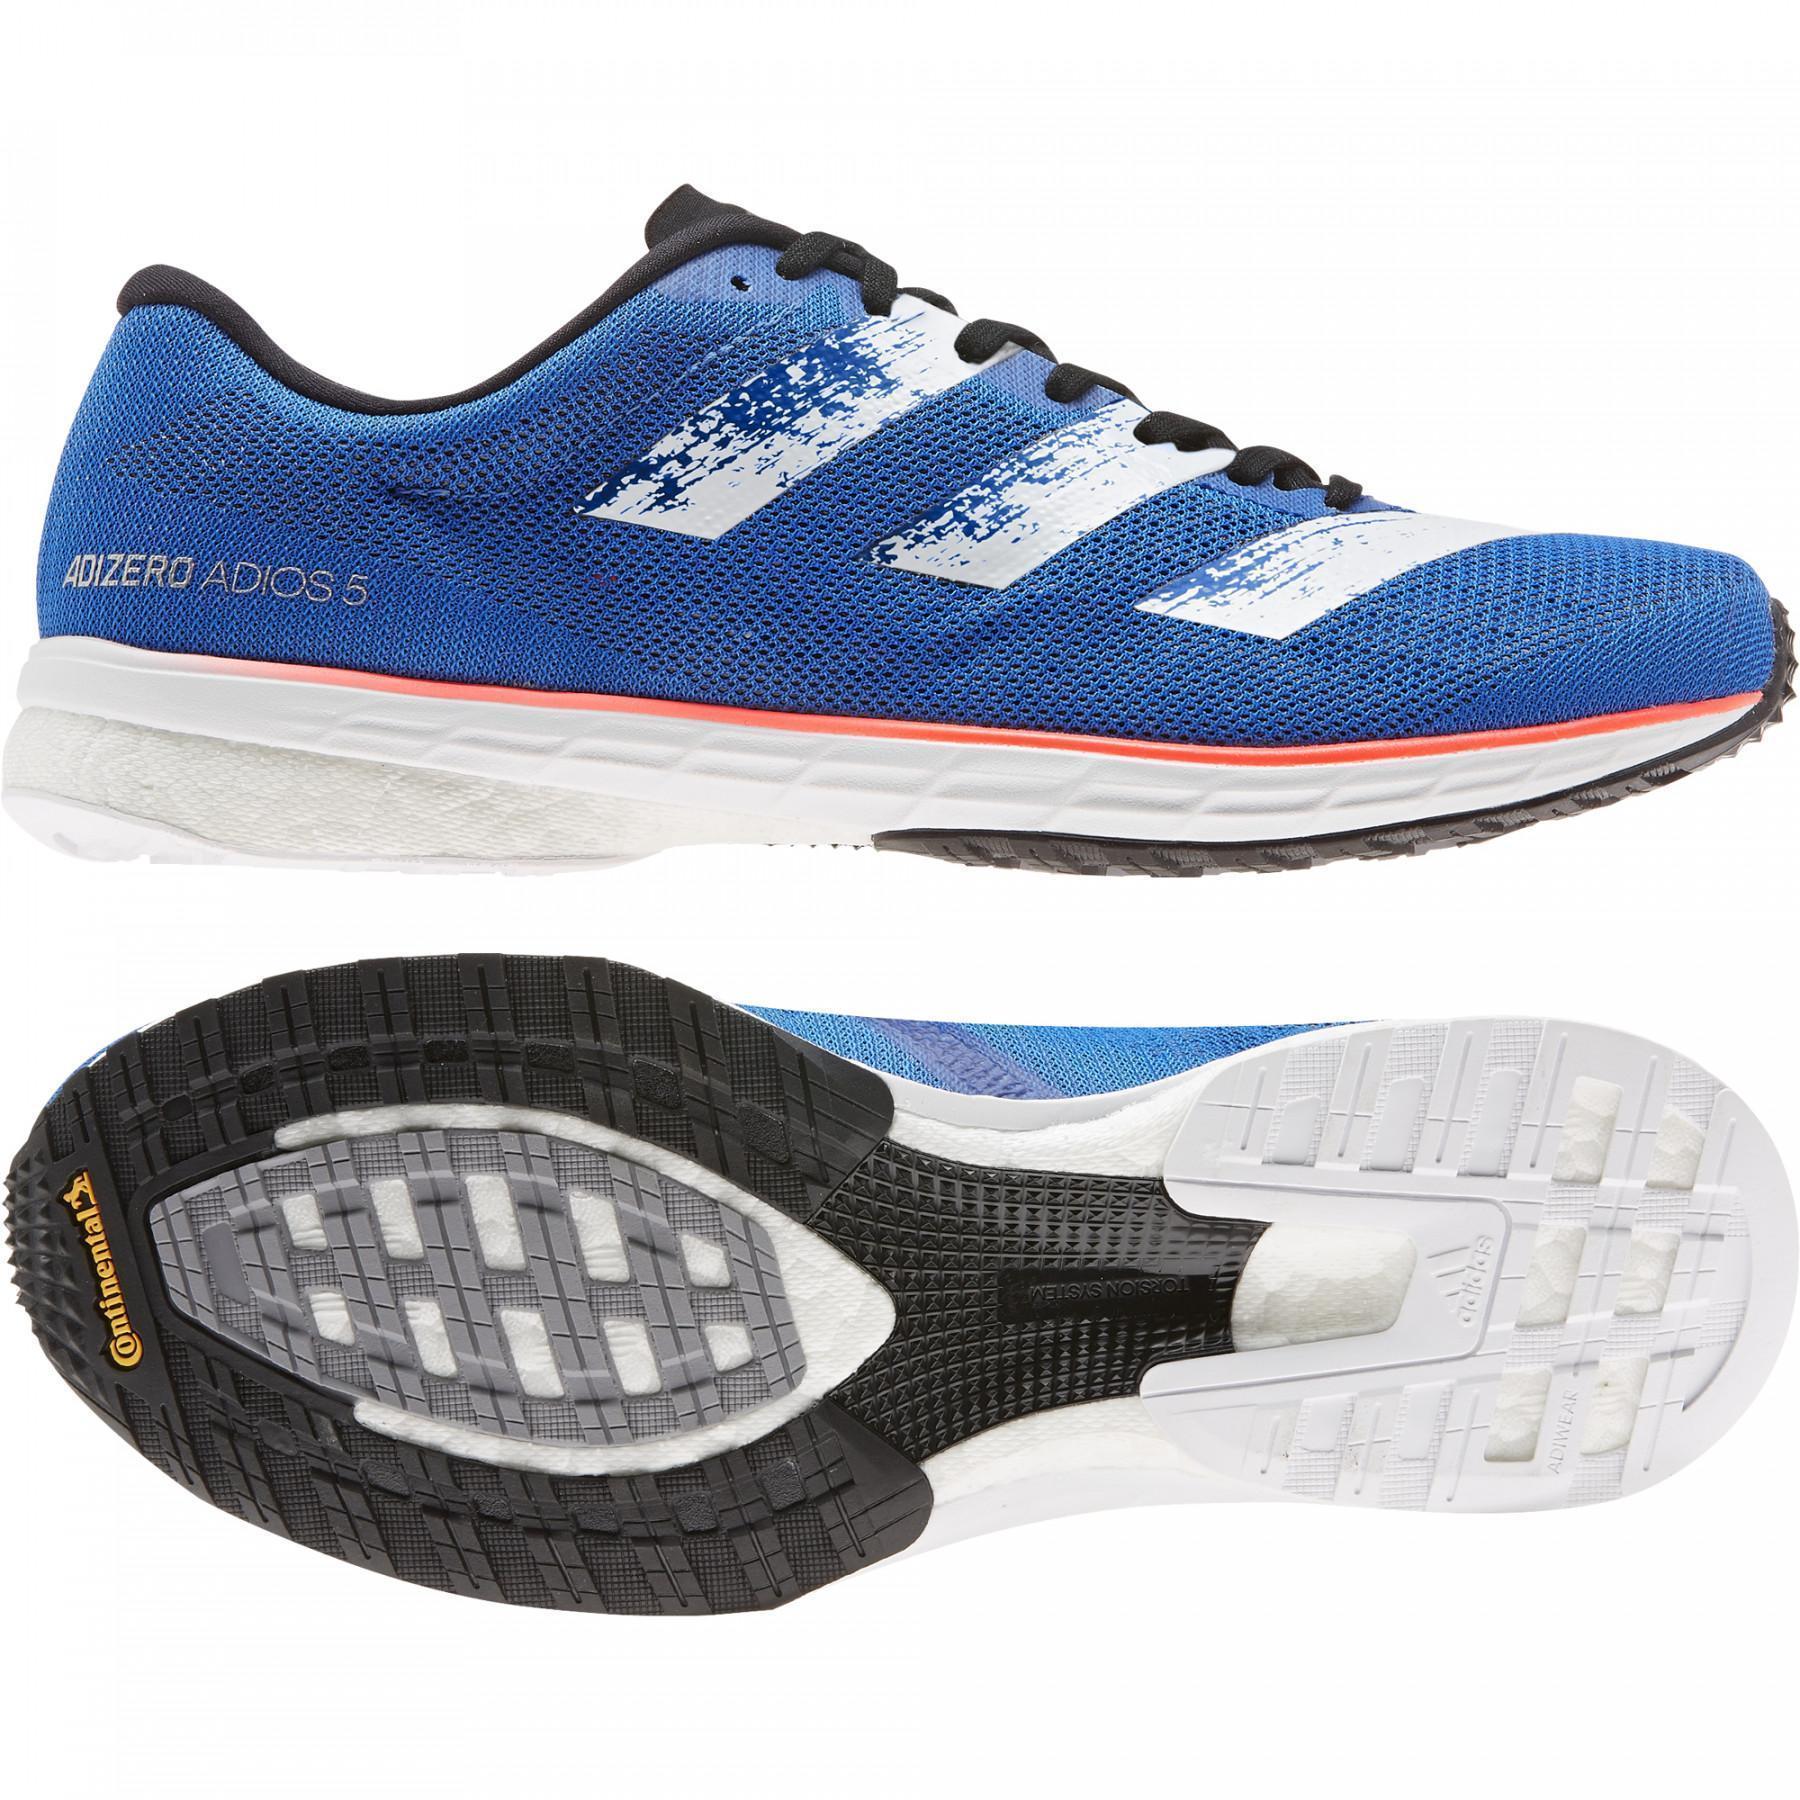 Chaussures de running adidas Adizero Adios 5